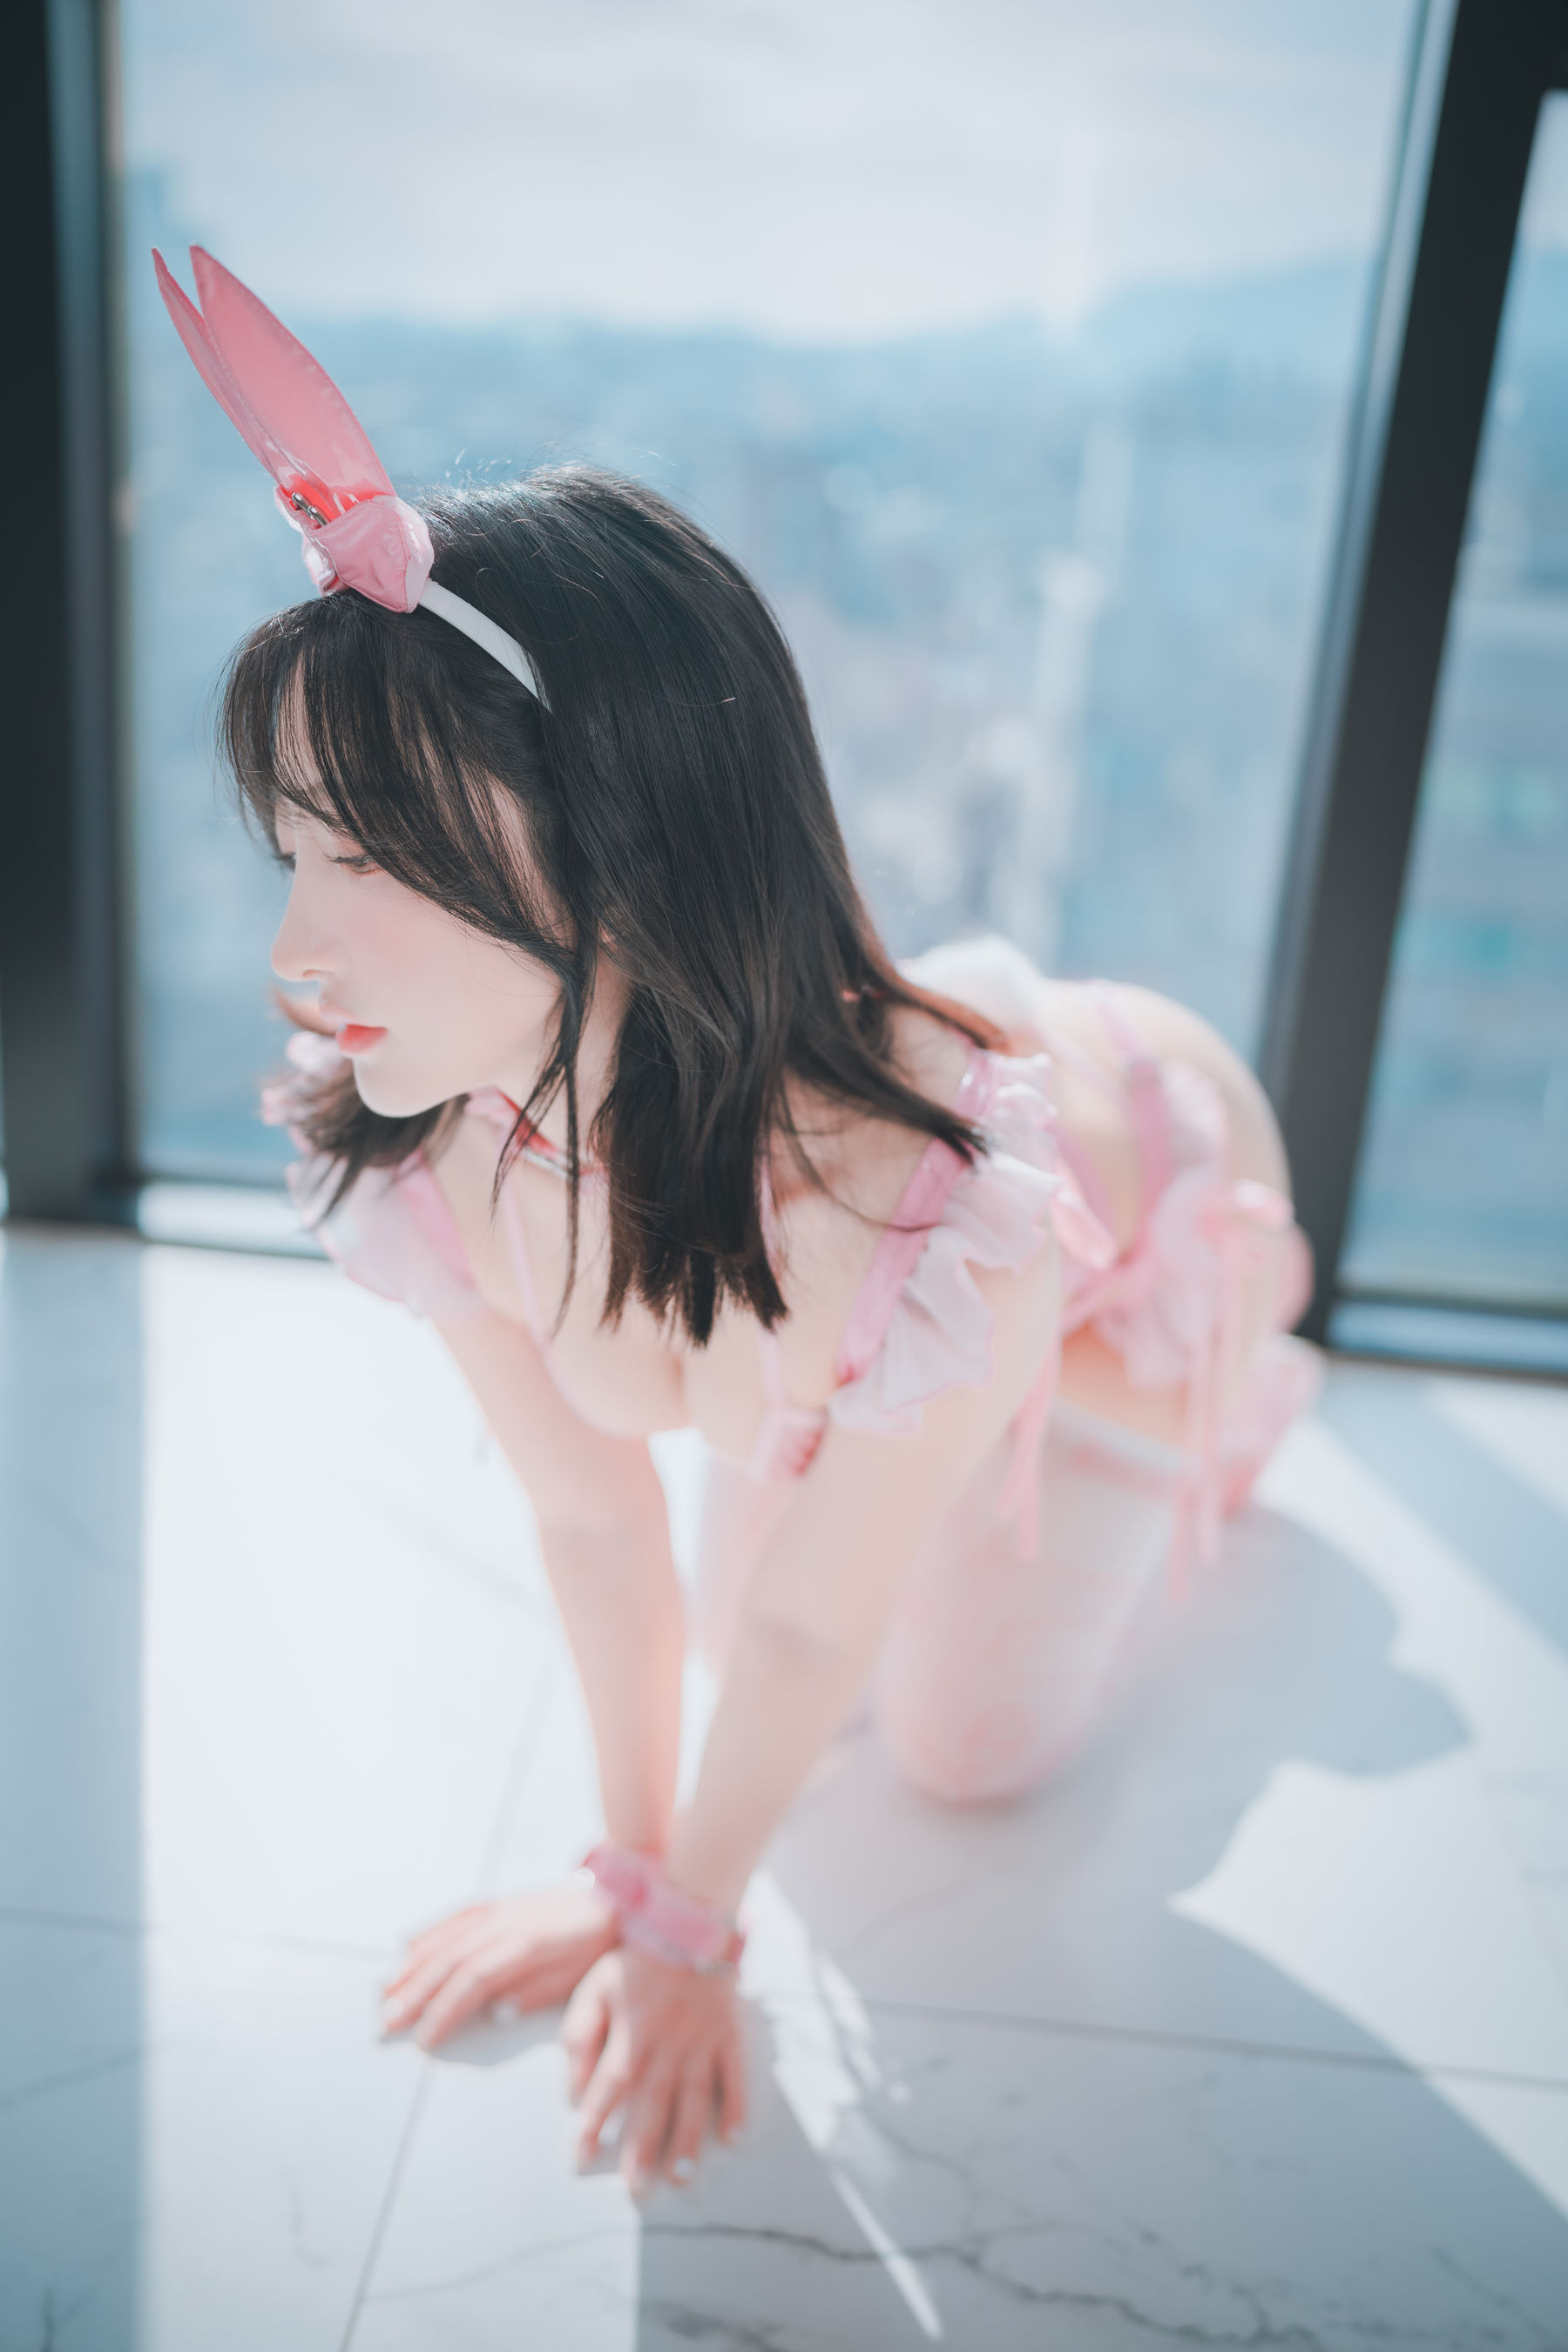 [DJAWA] Hanari - My Pinky Valentine  第12张